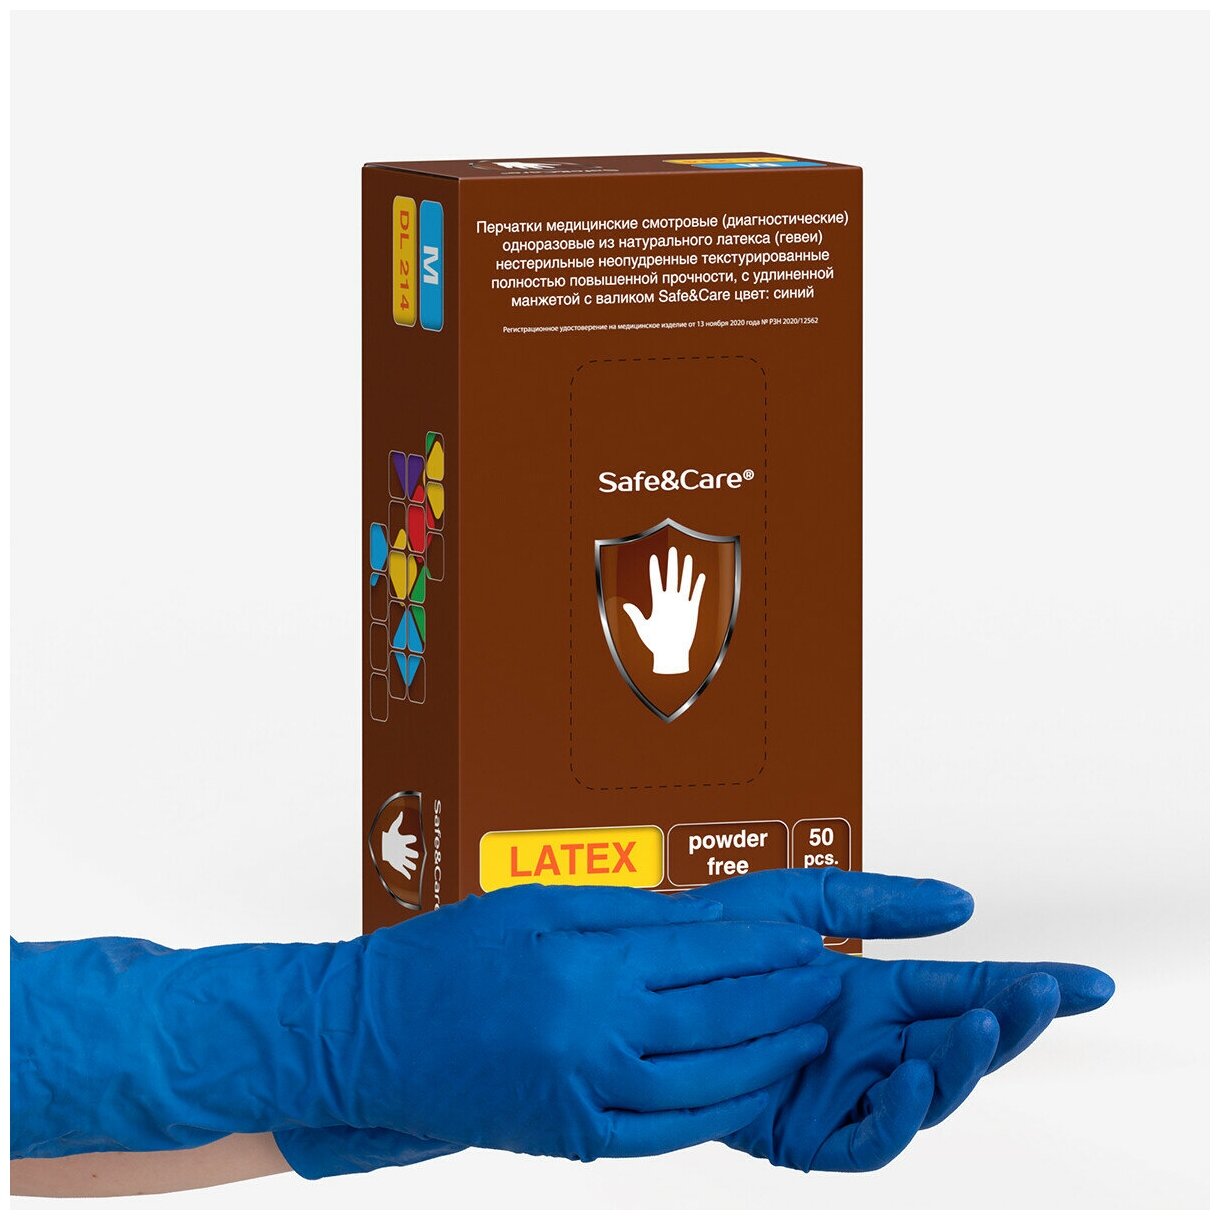 Перчатки латексные сверхпрочные High Risk Safe&Care DL 214, цвет: синий, размер L, 50 шт. (25 пар) двукратного хлорирования